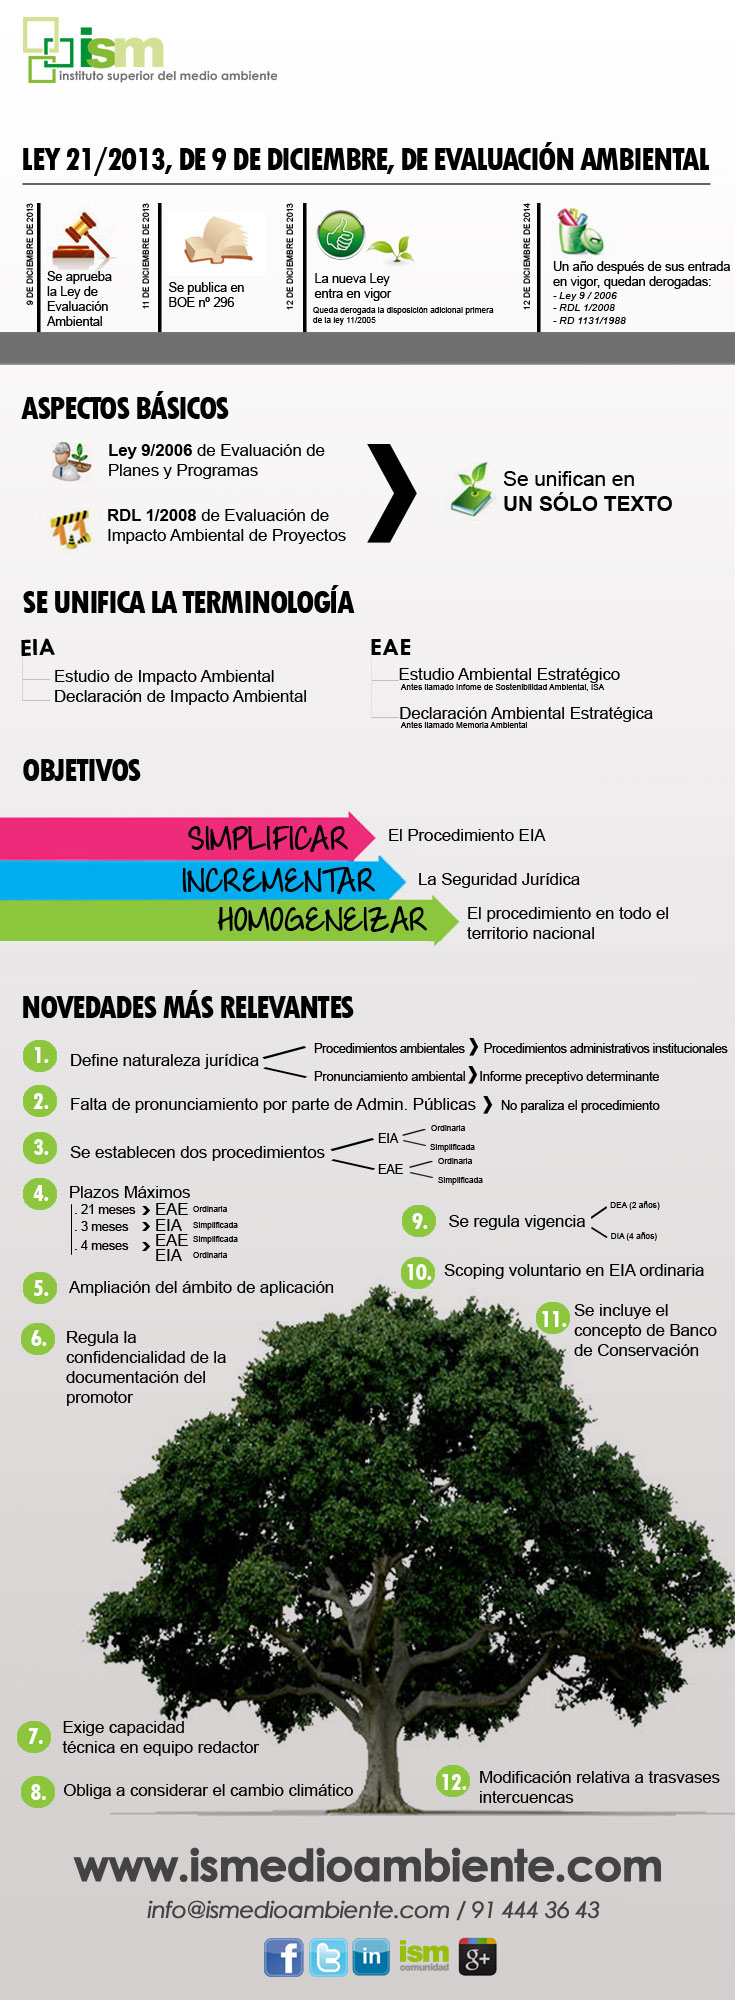 infografia-Evaluación-Ambiental